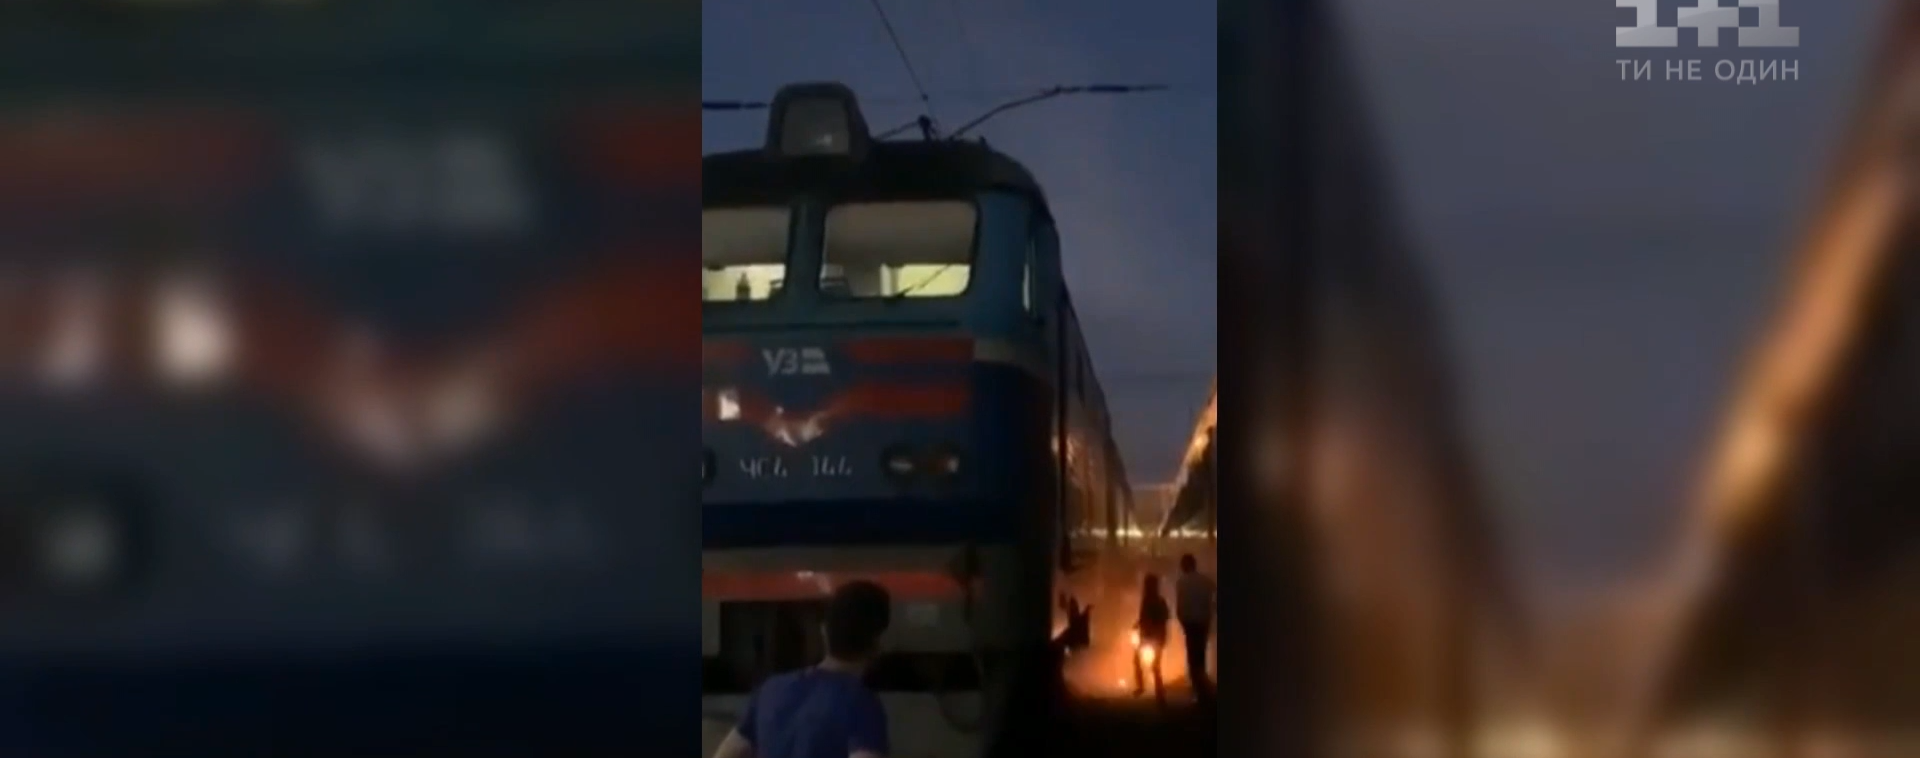 Стали відомі подробиці про людину, що загорілася на залізничному вокзалі у Києві